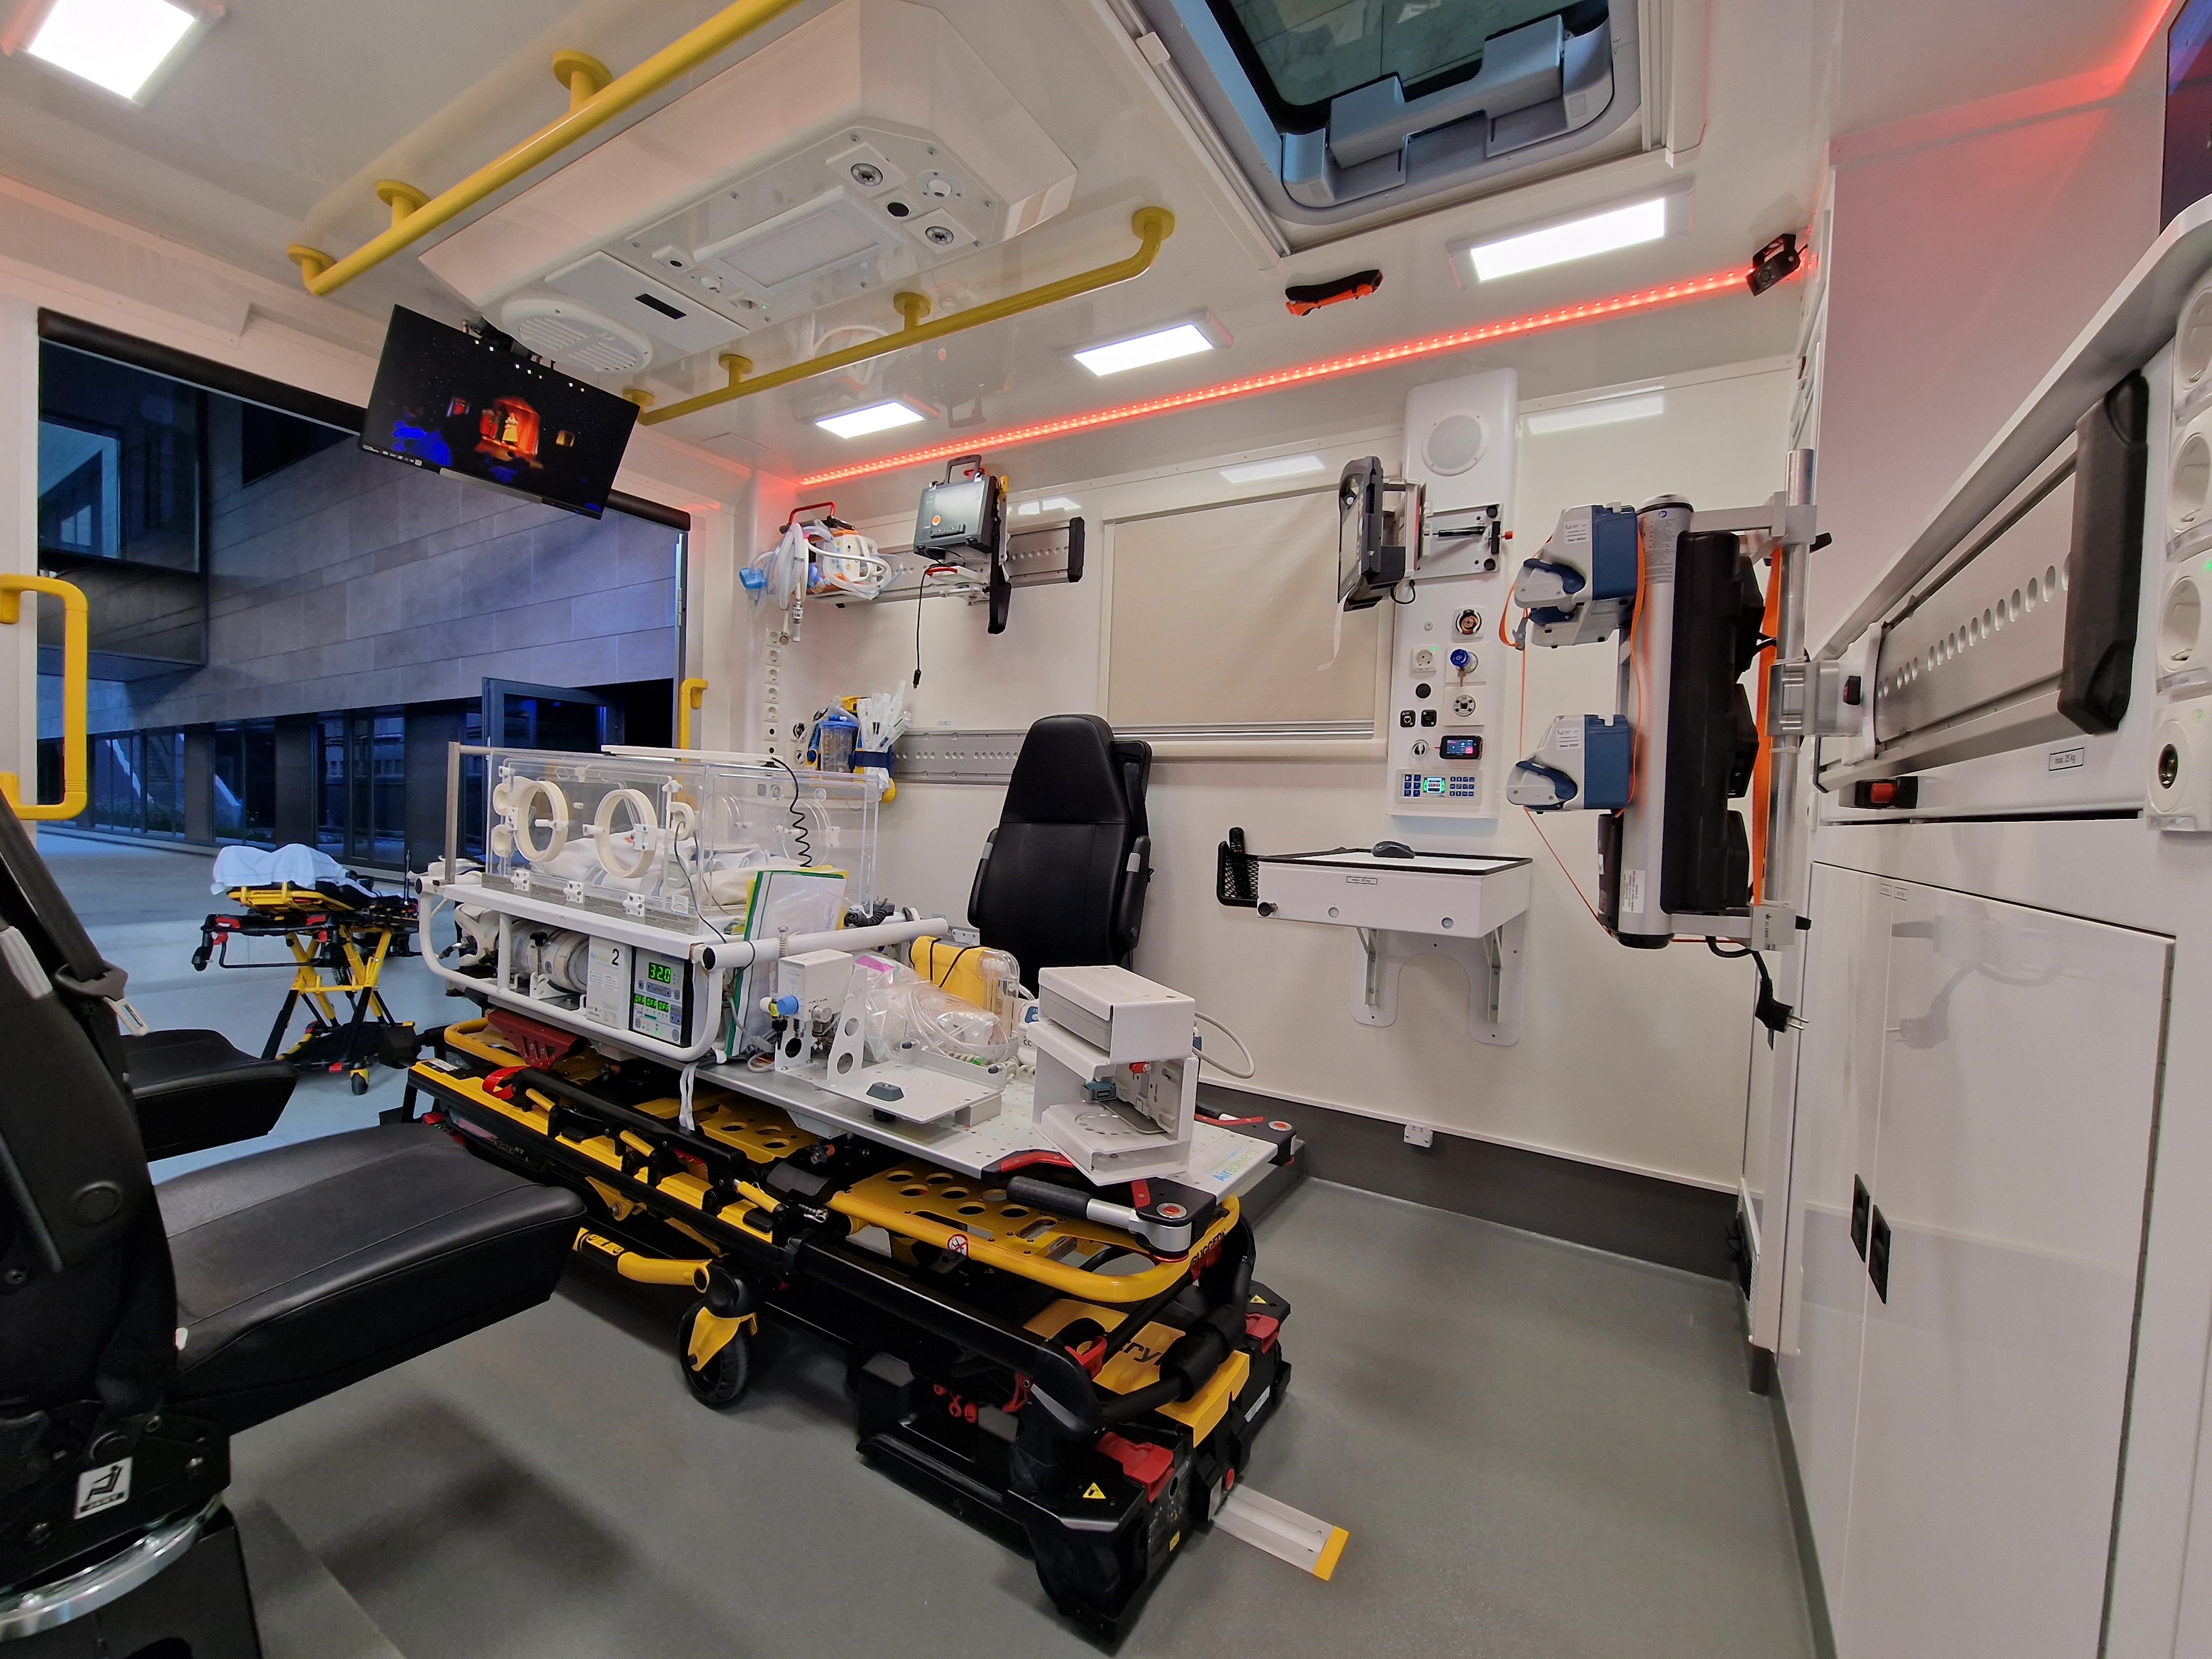 Nouvelle ambulance haute technologie pour l’UZ Brussel  2kys